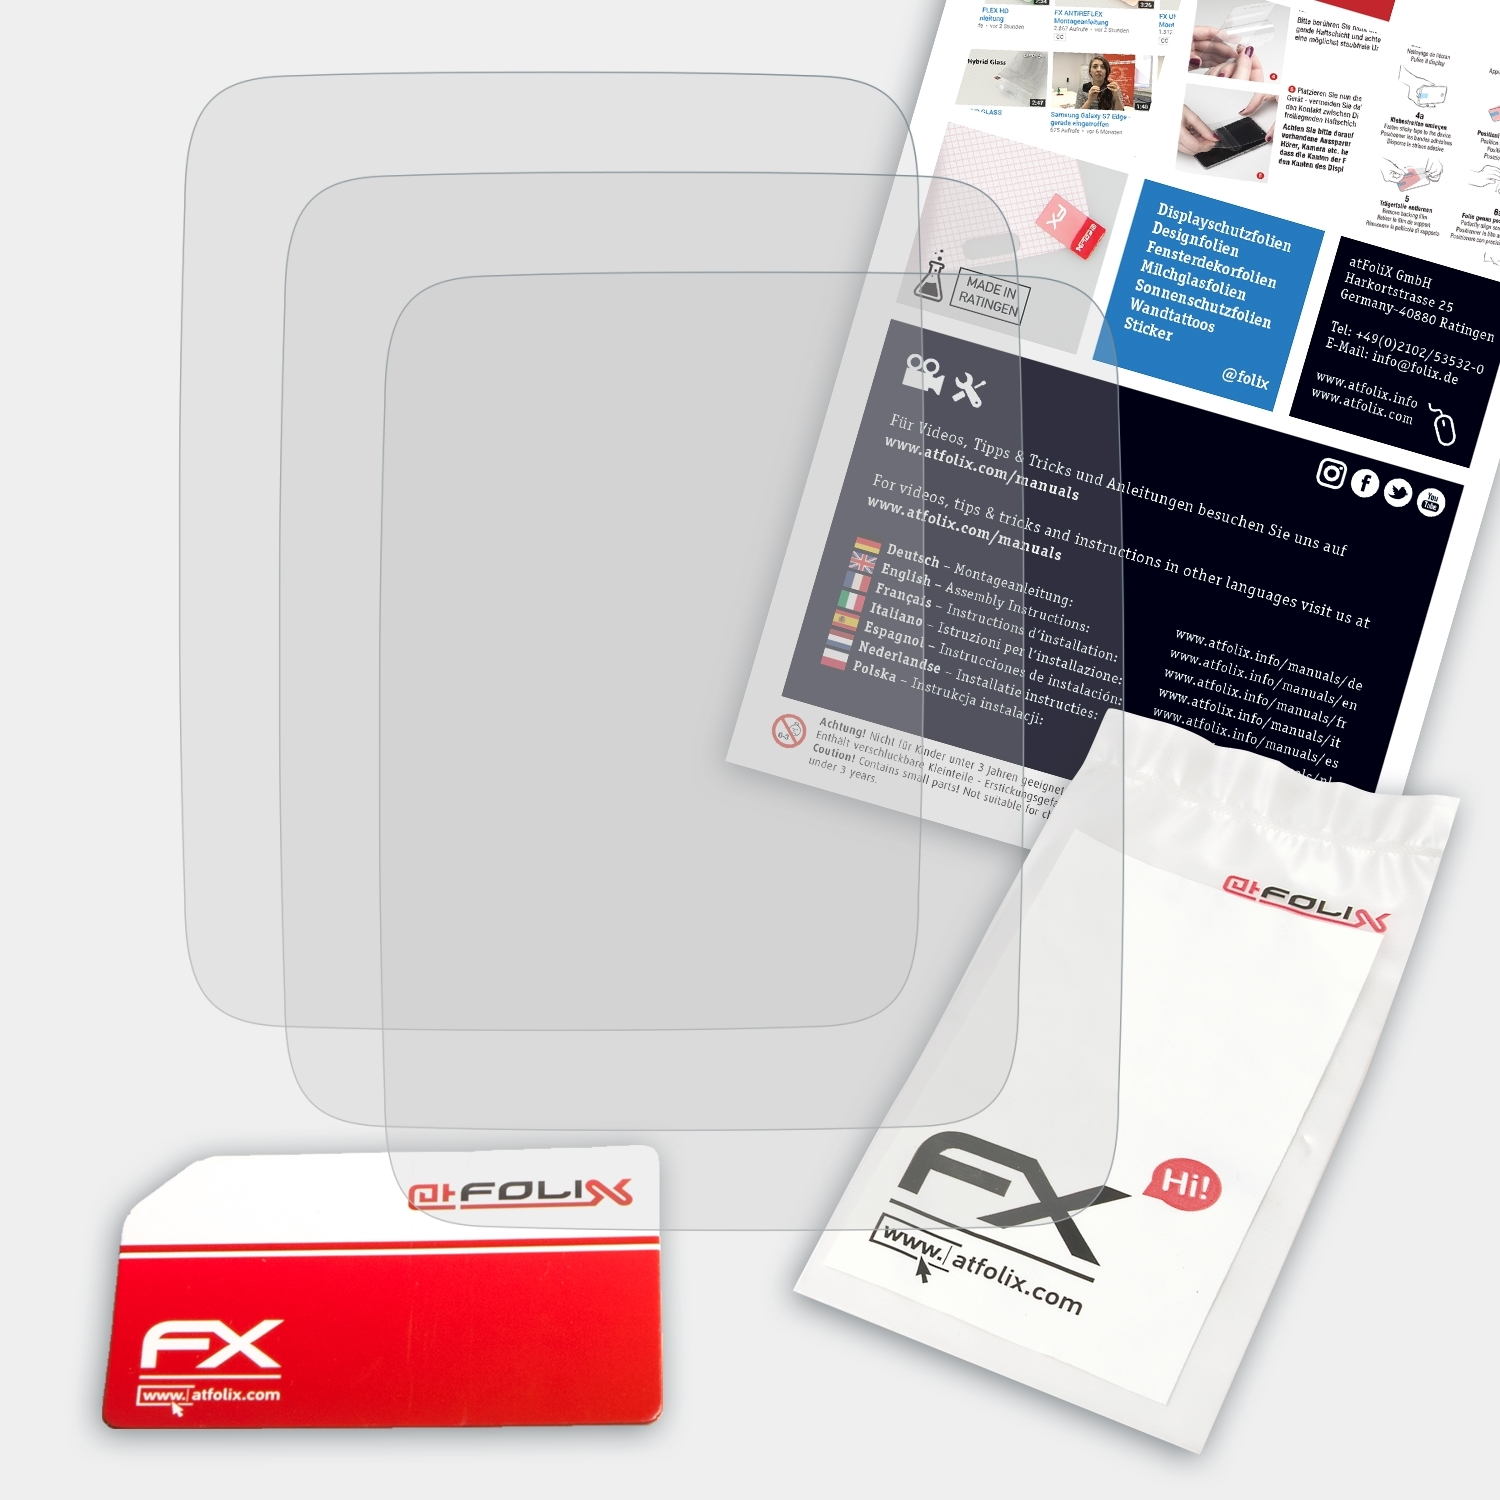 ATFOLIX 3x FX-Antireflex 3 3) Runner Displayschutz(für TomTom / Spark